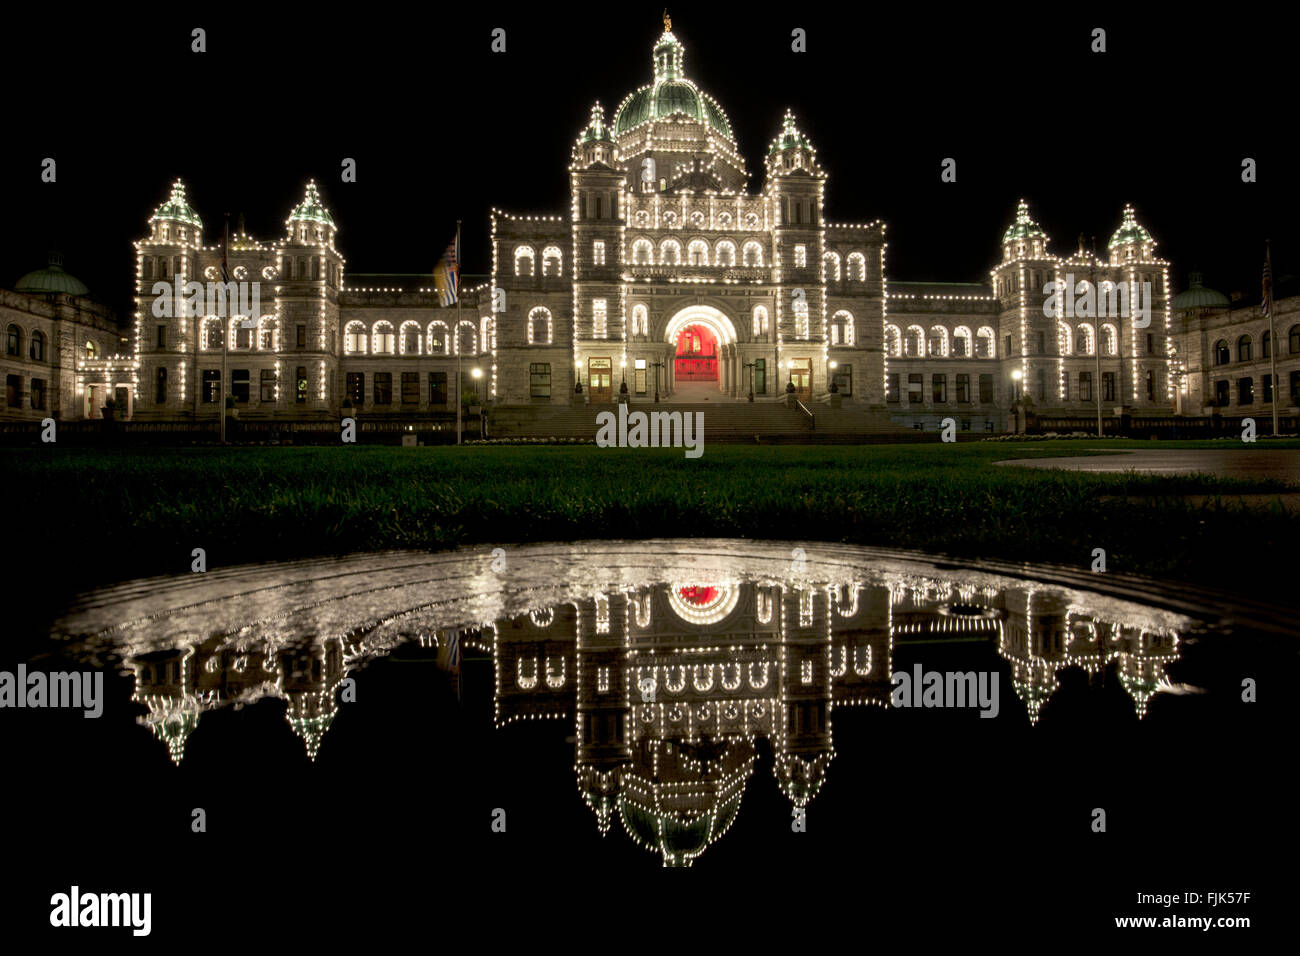 Les édifices du Parlement de la Colombie-Britannique dans la nuit - Victoria, île de Vancouver, Colombie-Britannique, Canada Banque D'Images